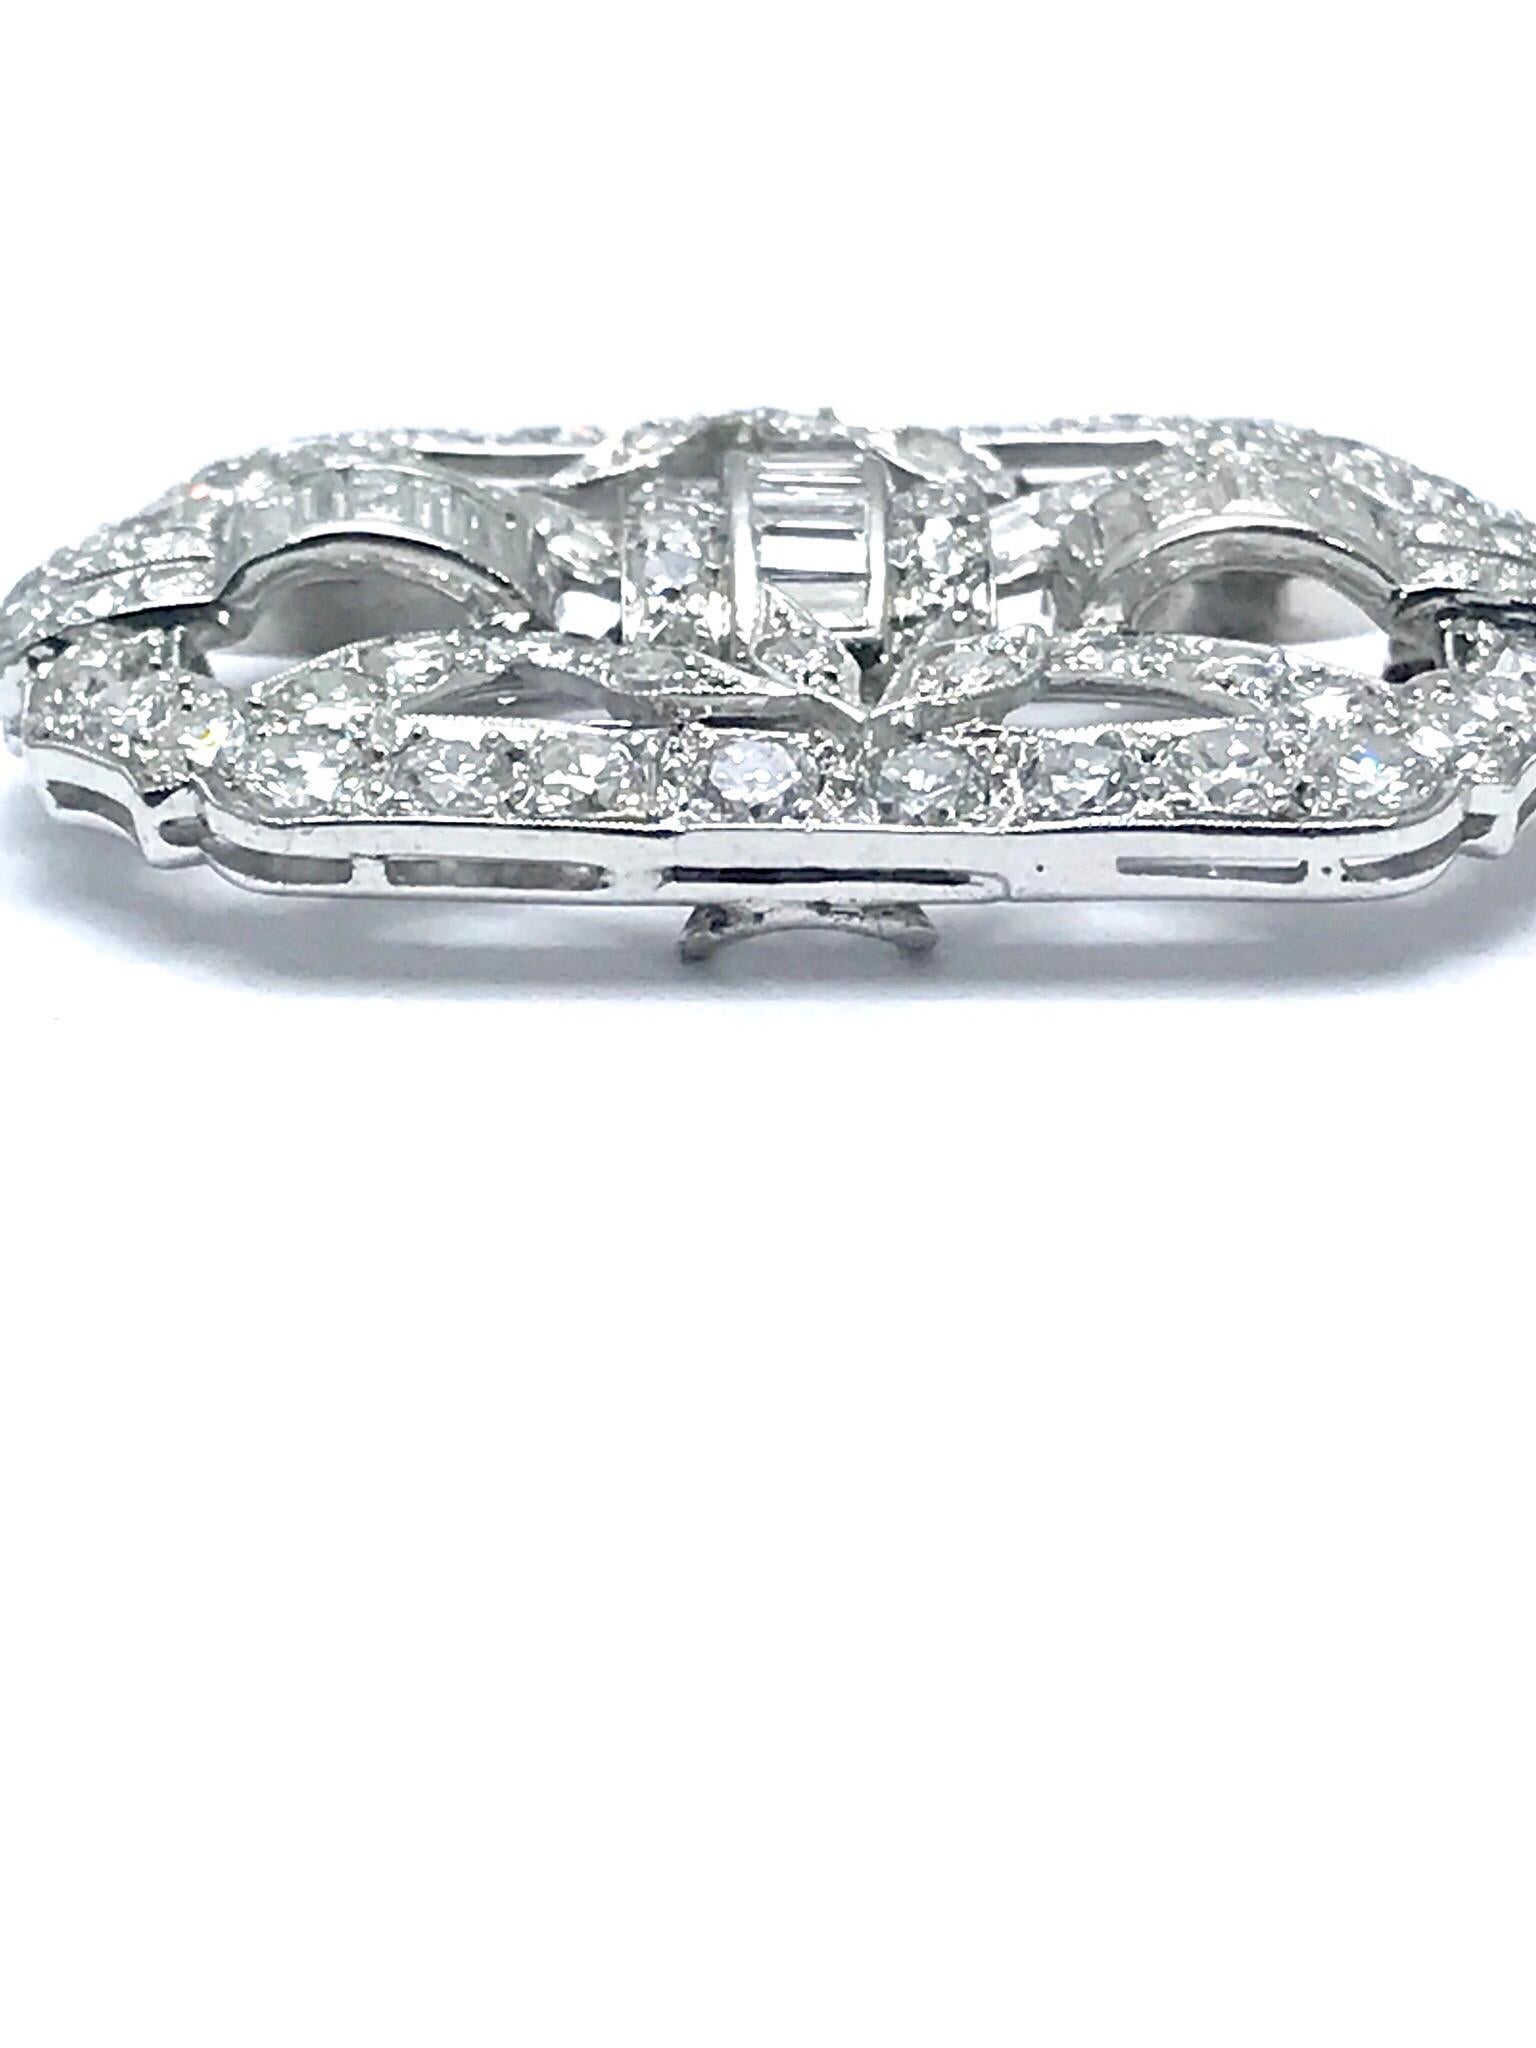 Eine schöne Art Deco Stil Diamant Platin Brosche und Anhänger.  Die Brosche besteht aus runden Brillanten, Diamanten im Einzelschliff und Baguette-Diamanten.  Es gibt 58 runde Diamanten mit einem Gesamtgewicht von 3,14 Karat und 16